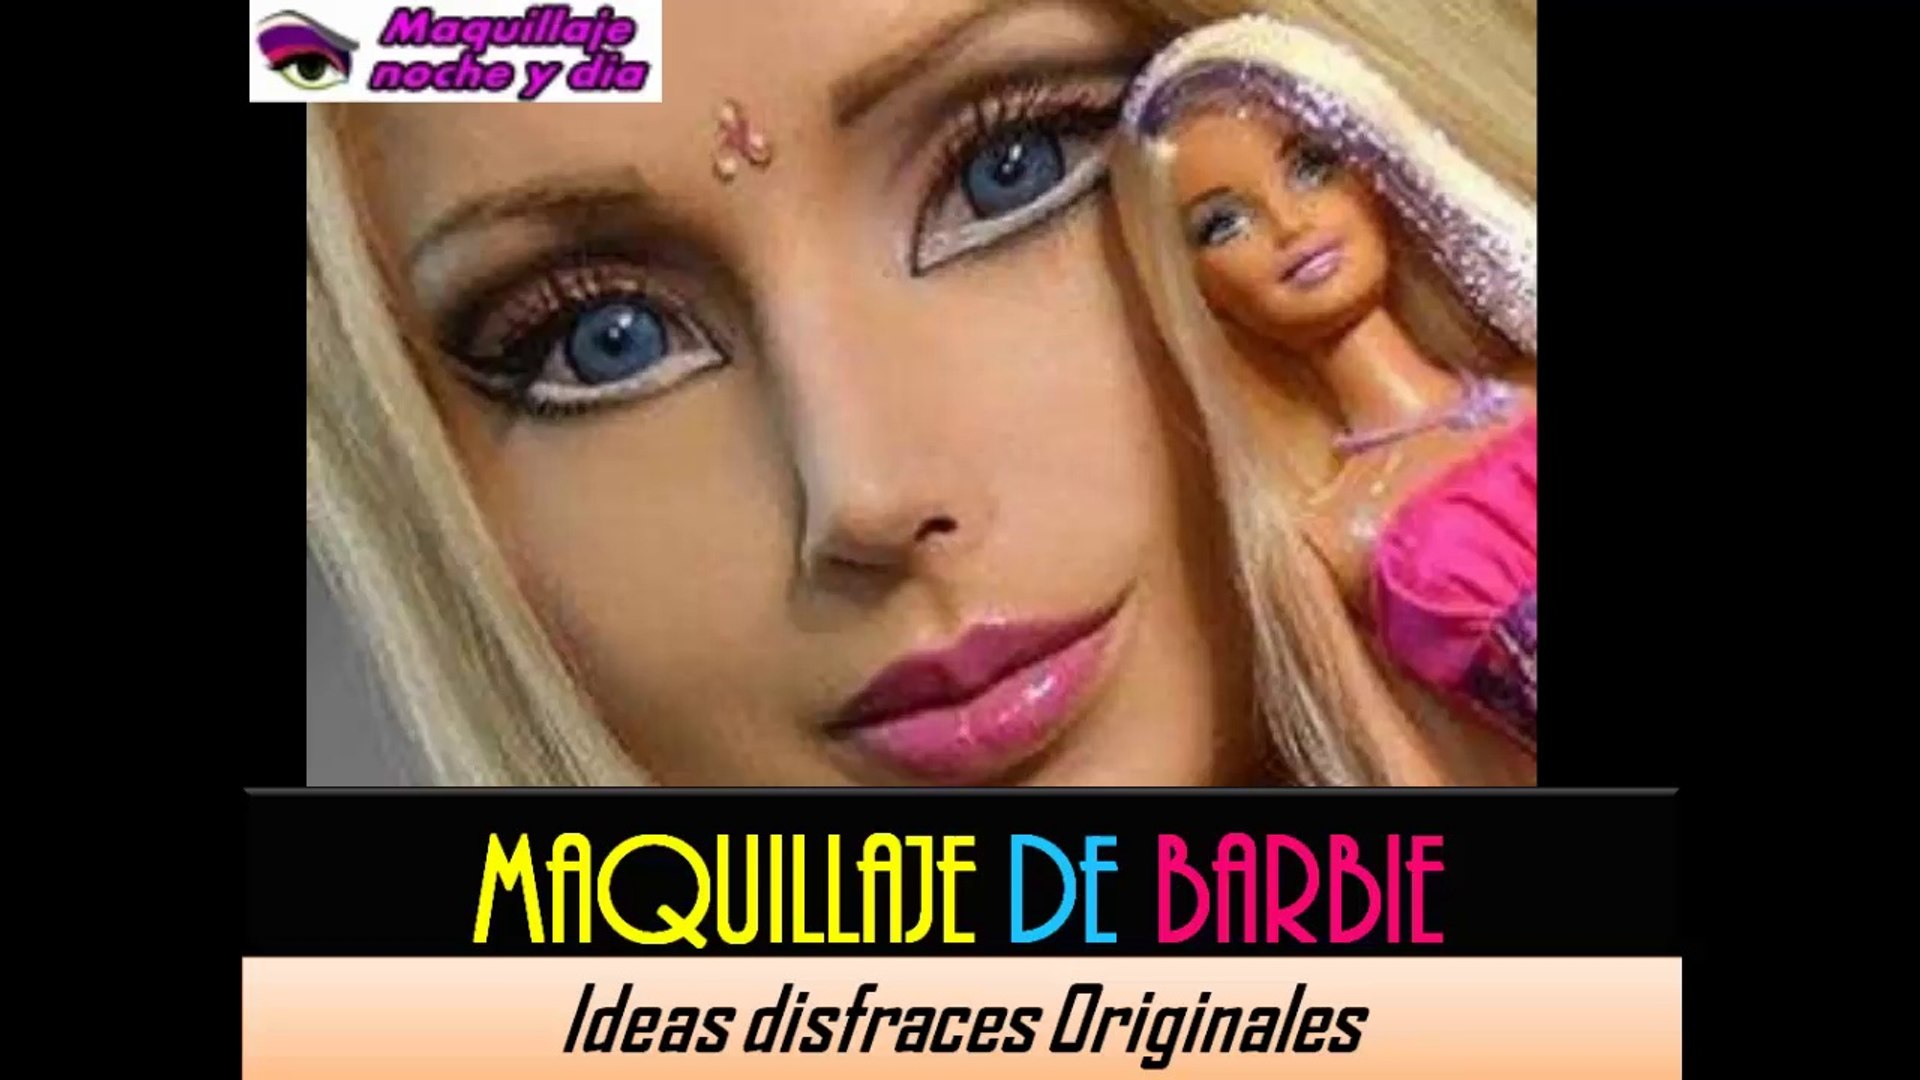 BARBIE MAQUILLAJE | Look muñeca real y perfecta ¡Disfraces originales! -  Vídeo Dailymotion